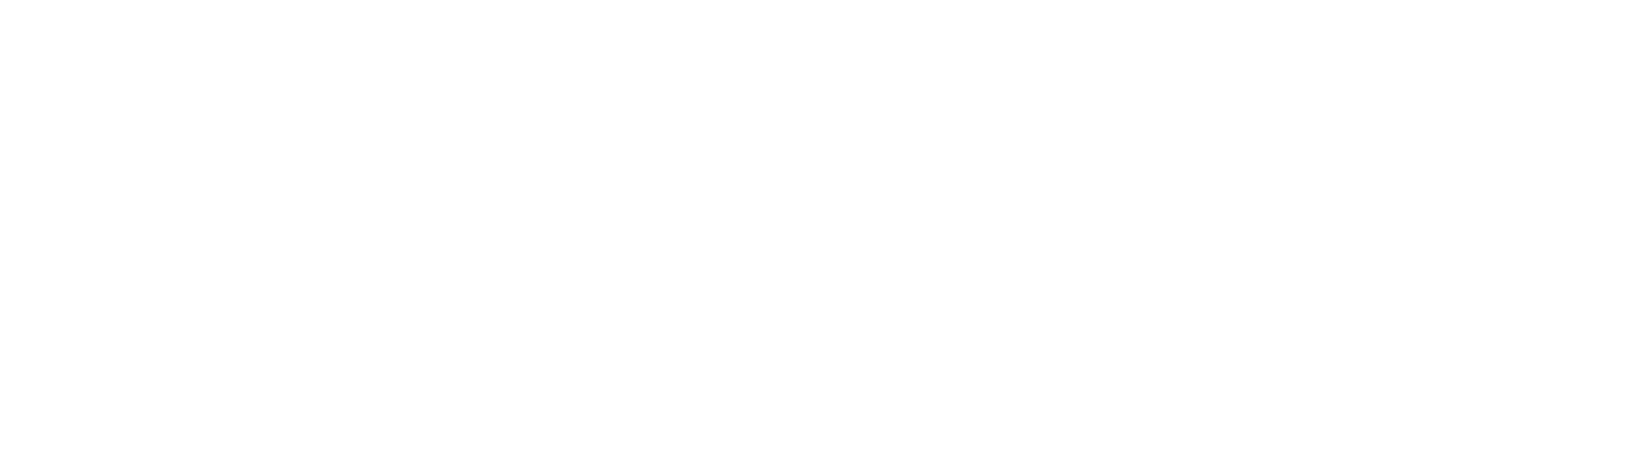 Beykoz Üniversitesi | Beykoz University